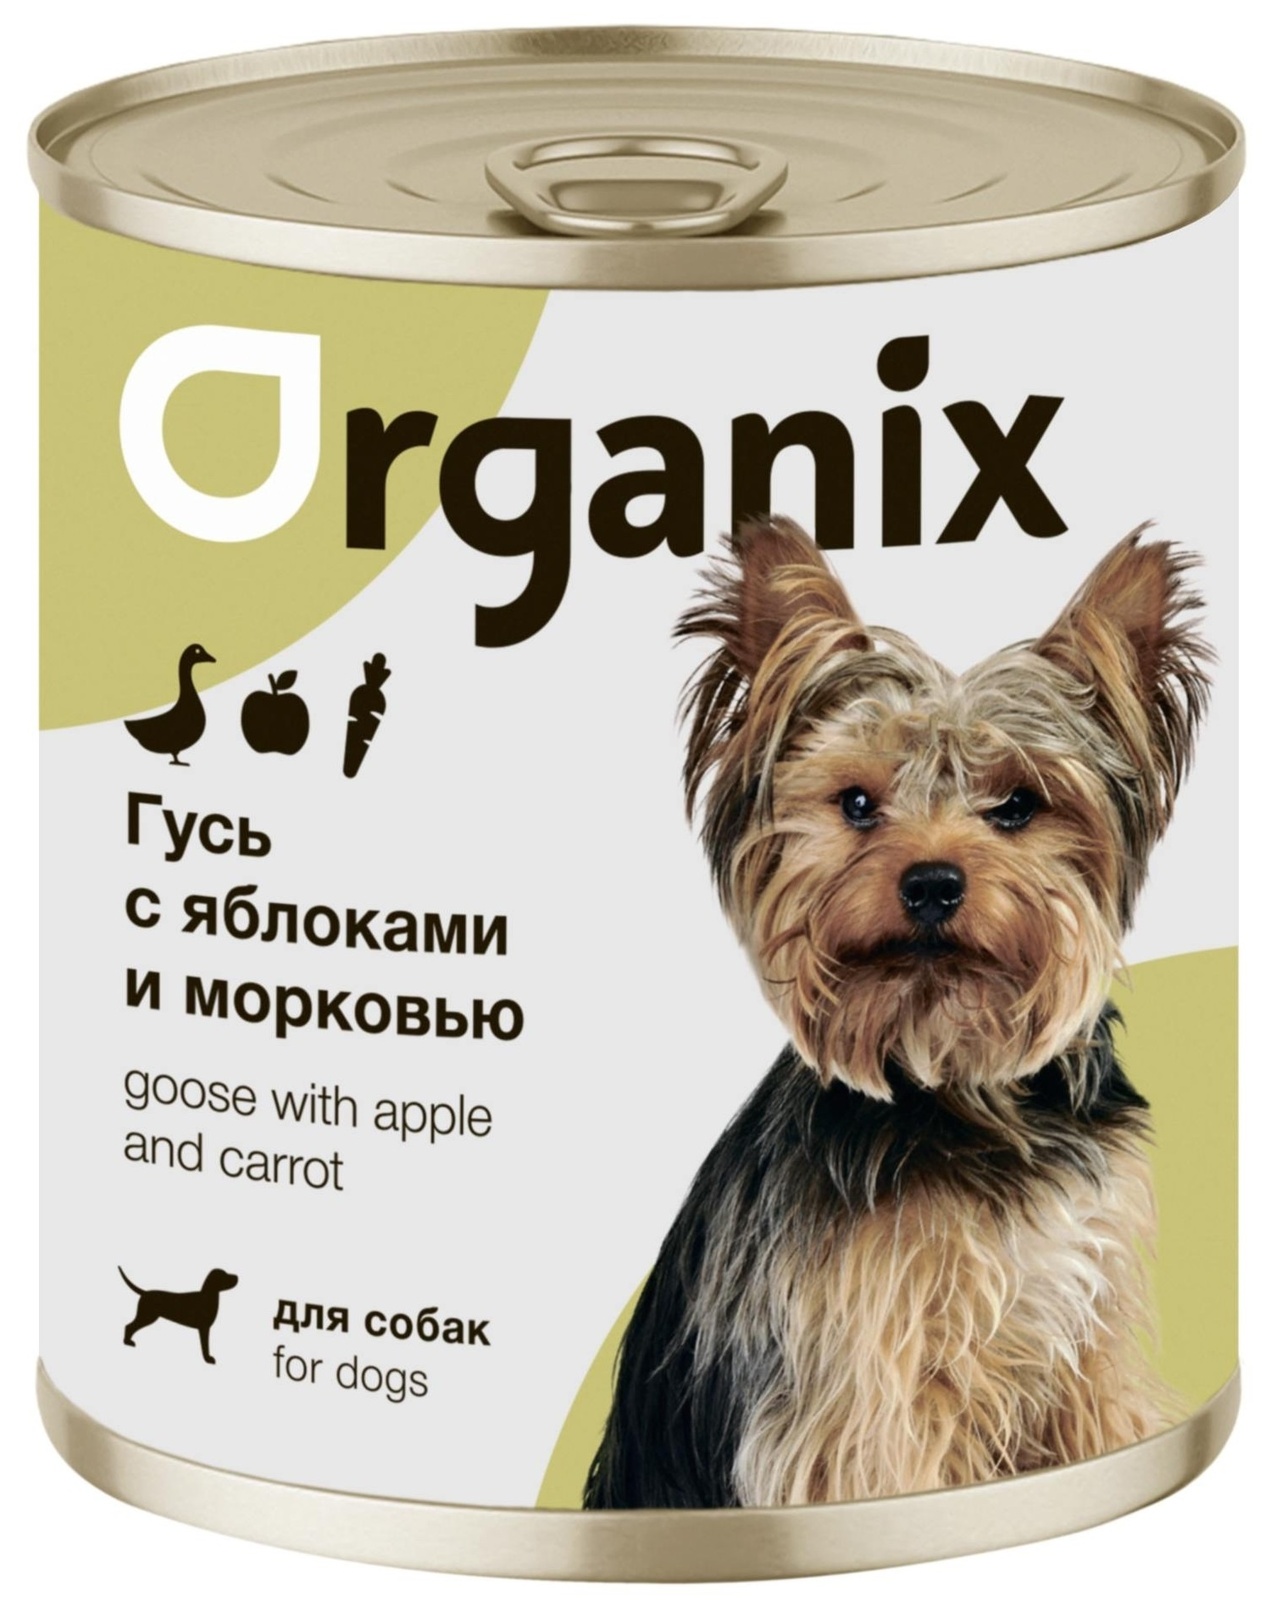 Organix консервы Organix консервы для собак Фрикасе из гуся с яблоками и морковкой (400 г) organix консервы organix консервы для собак телятина с зеленой фасолью 400 г